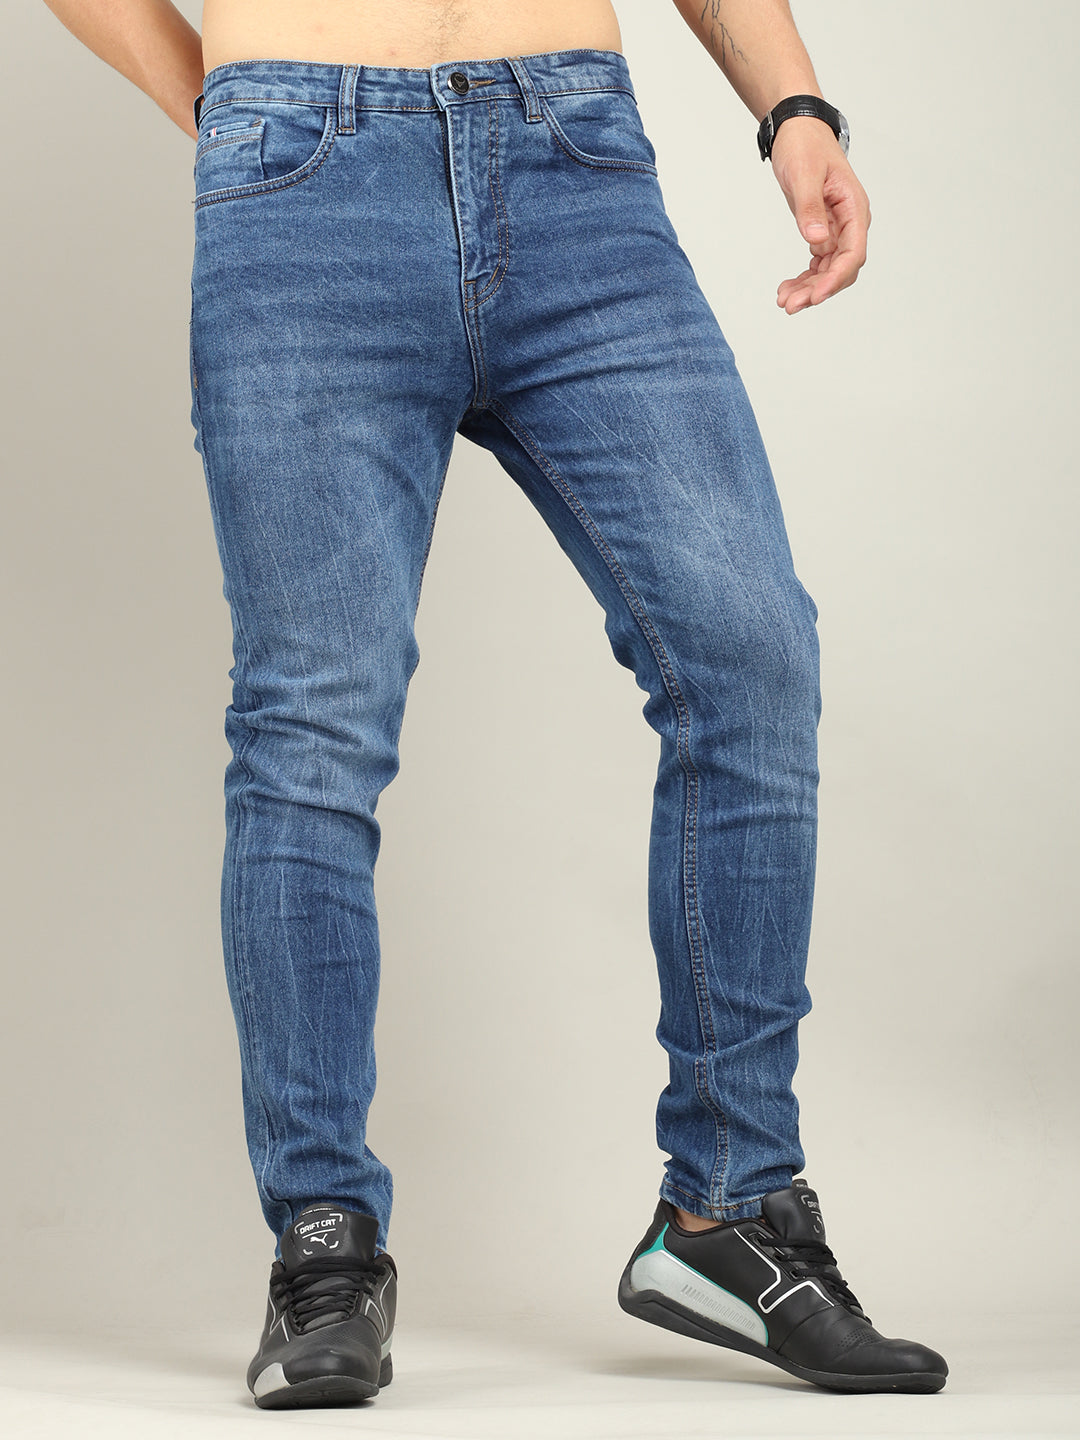 Jacoubs Denim Light Blue jeans